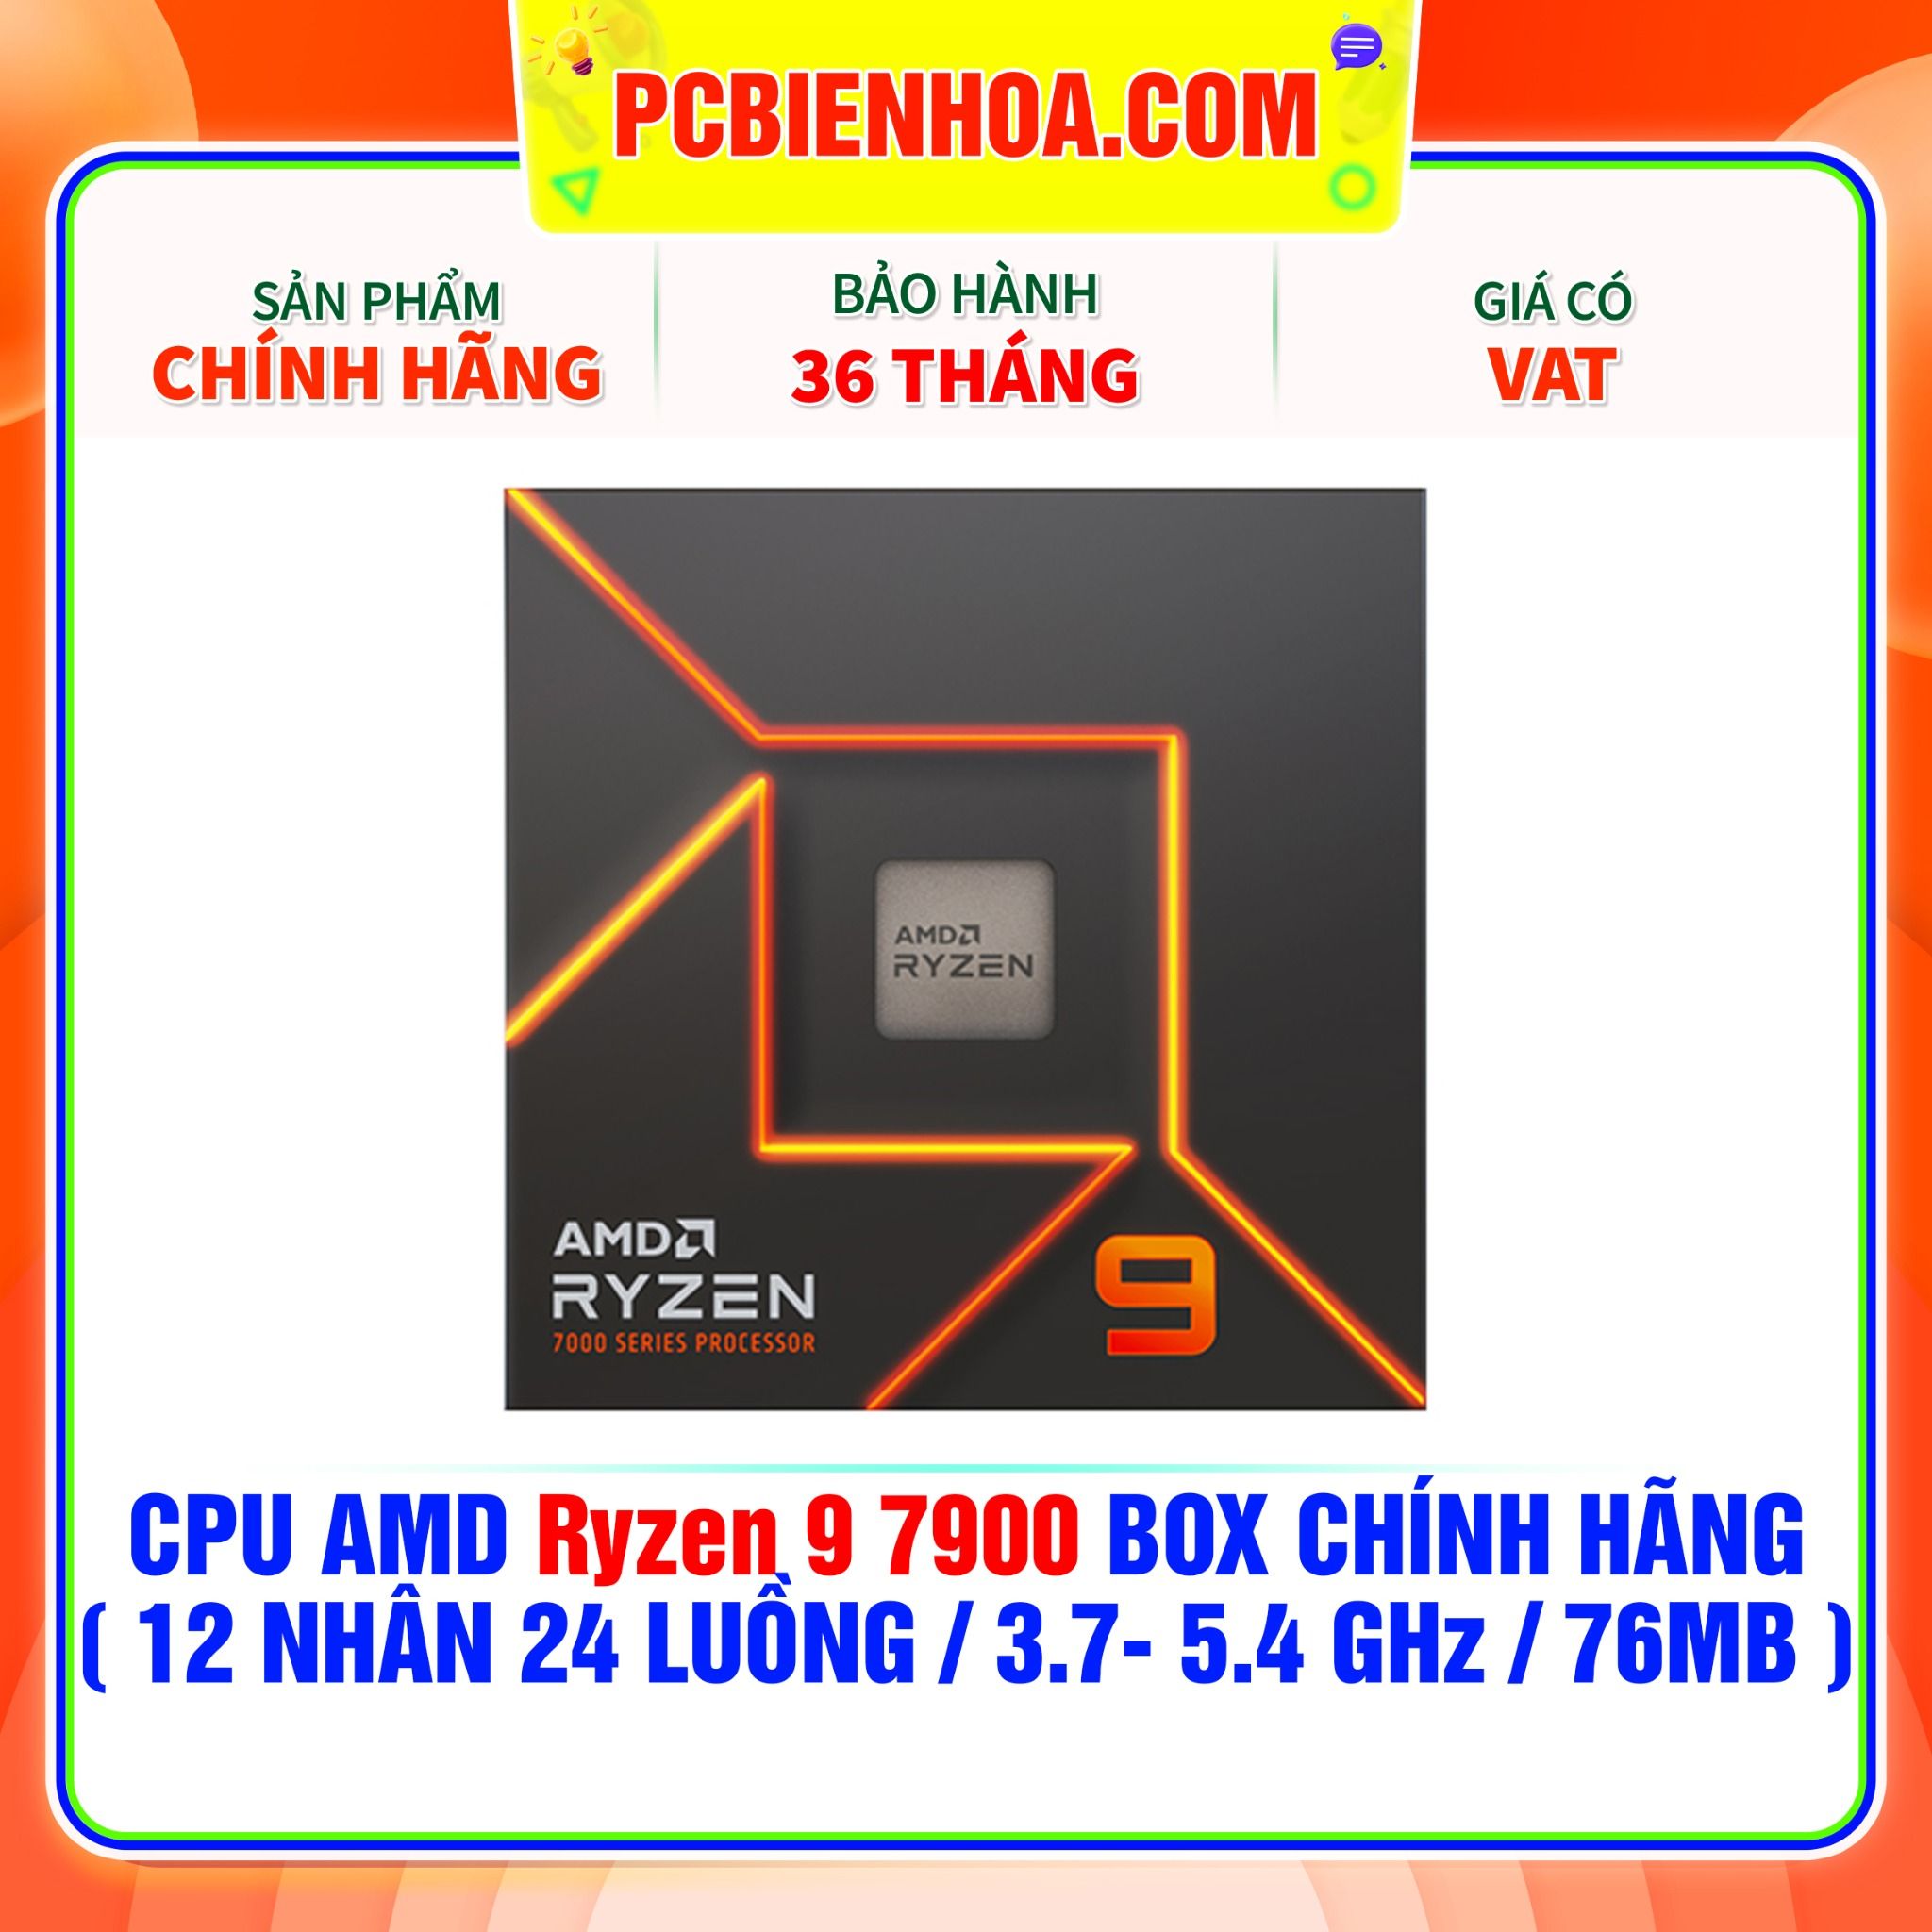  CPU AMD Ryzen 9 7900 BOX CHÍNH HÃNG ( 12 NHÂN 24 LUỒNG / 3.7- 5.4 GHz / 76MB ) 